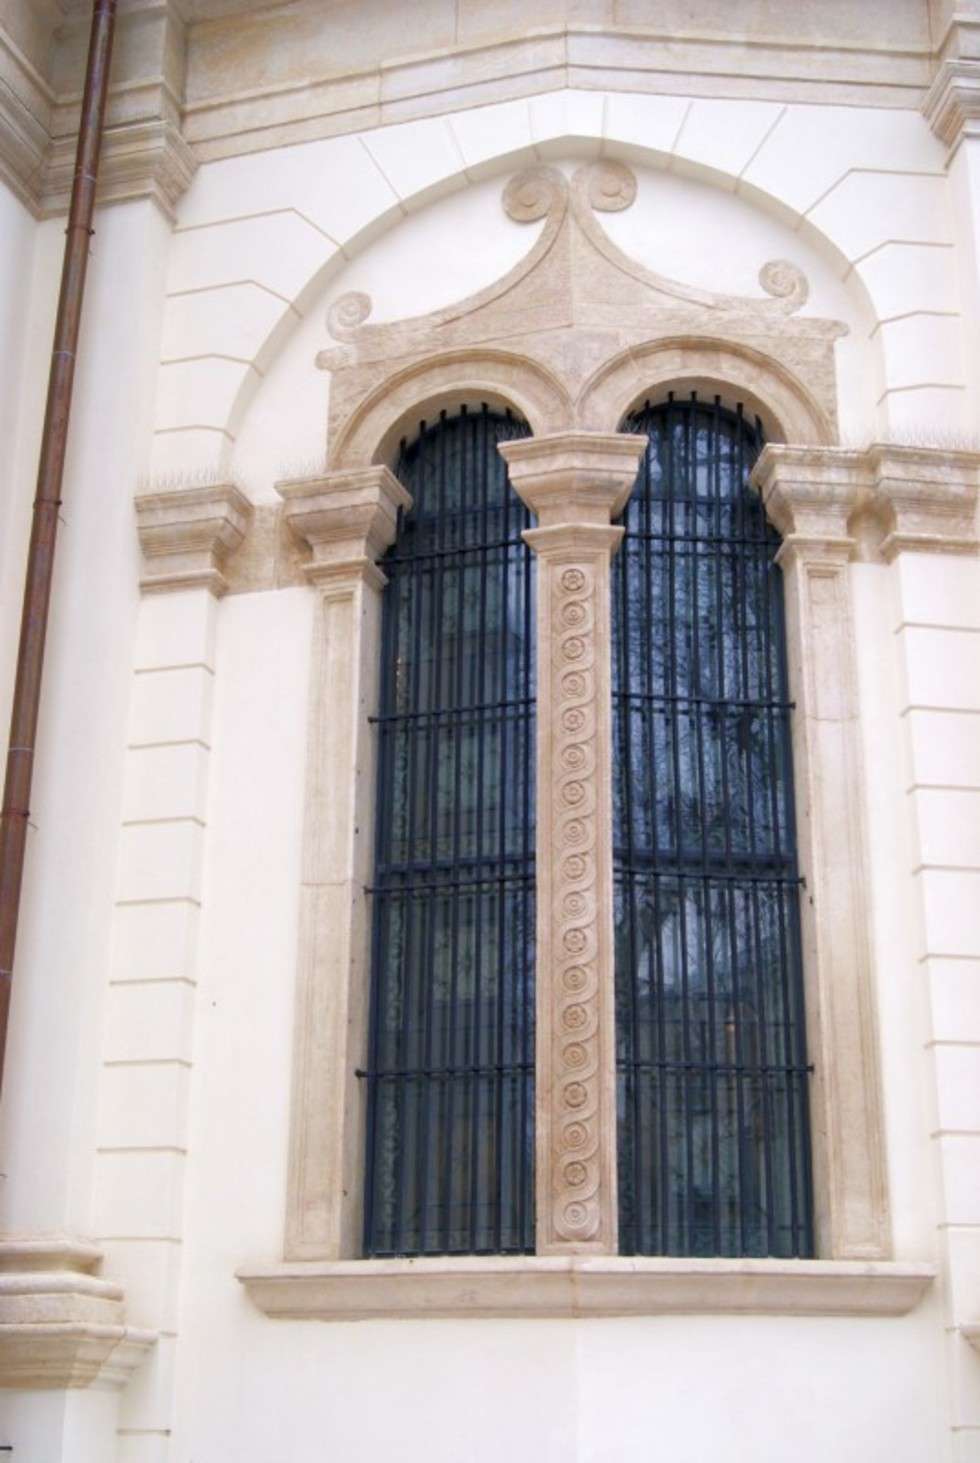  W katedrze pojawiły się też nowe okna. Kompletną renowację przeszło również otoczenie świątyni.